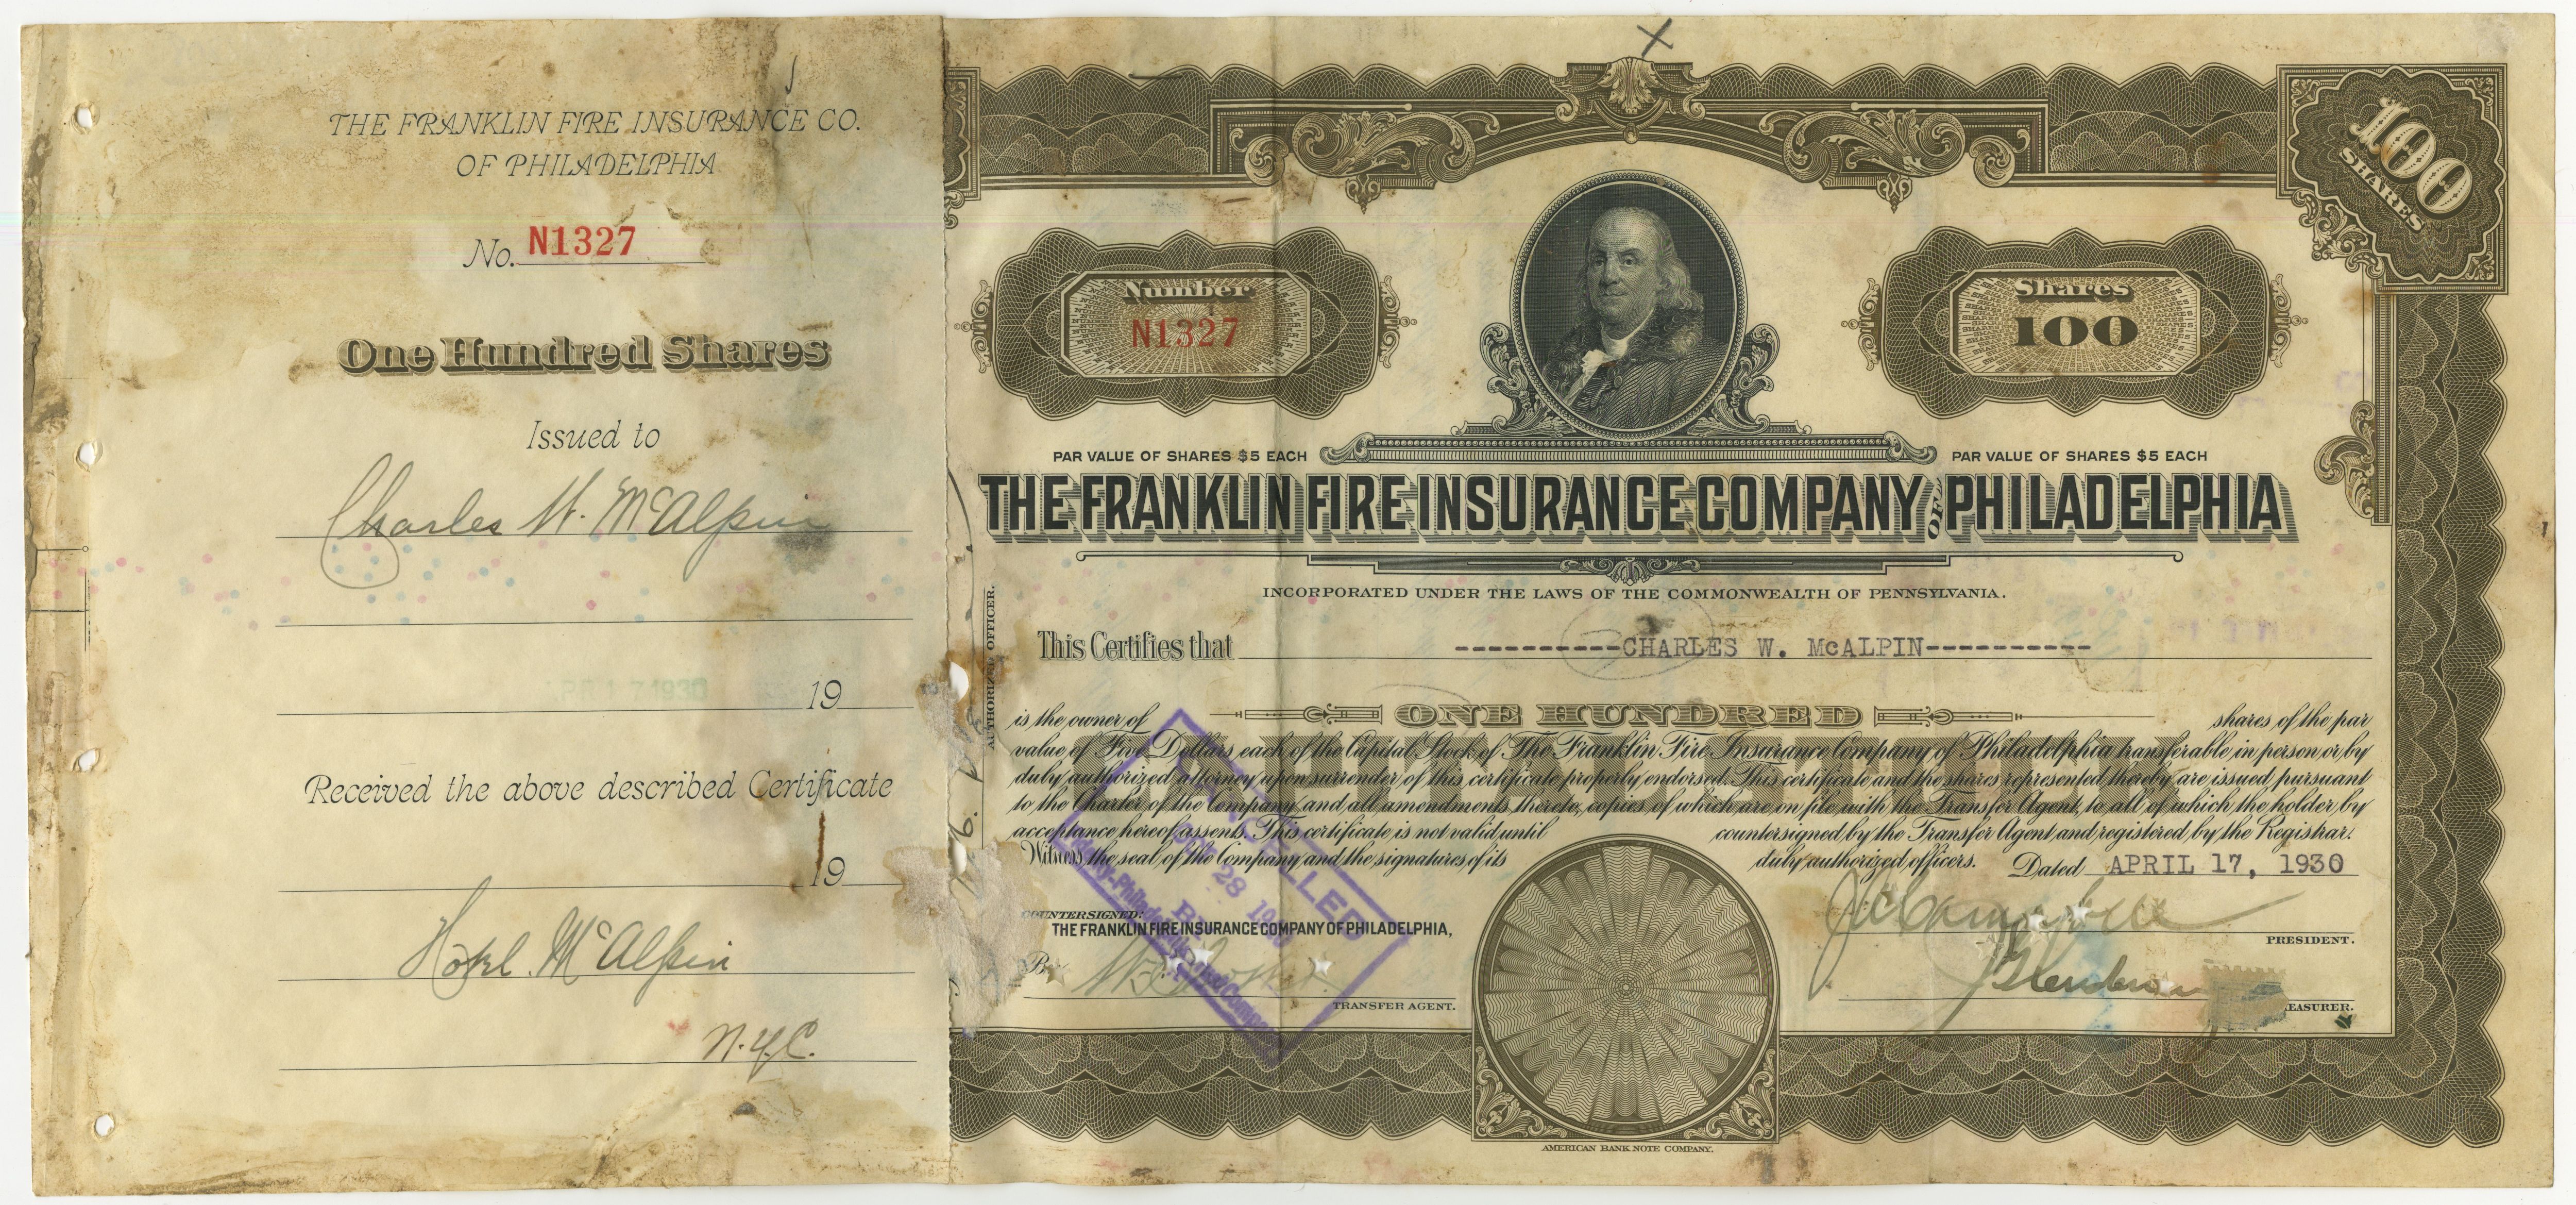 100 akcji The Franklin Fire Insurance Company of Philadelphia z 17 kwietnia 1930 roku.